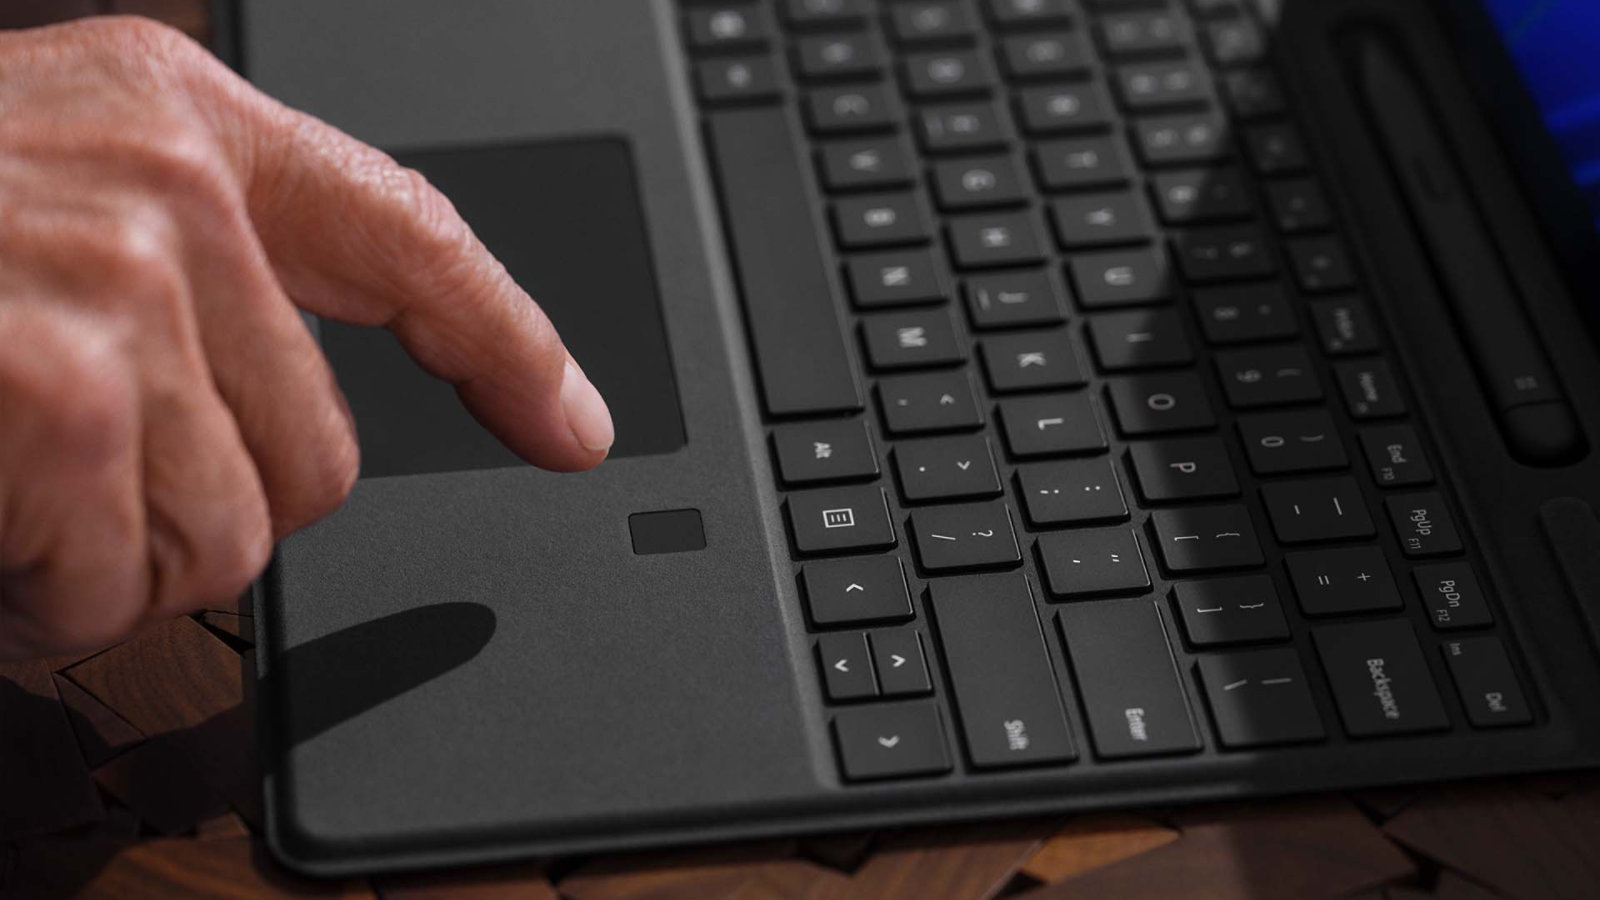 De vinger van een persoon zweeft over de biometrische aanmeldingsfunctie op Surface Pro speciaal toetsenbord